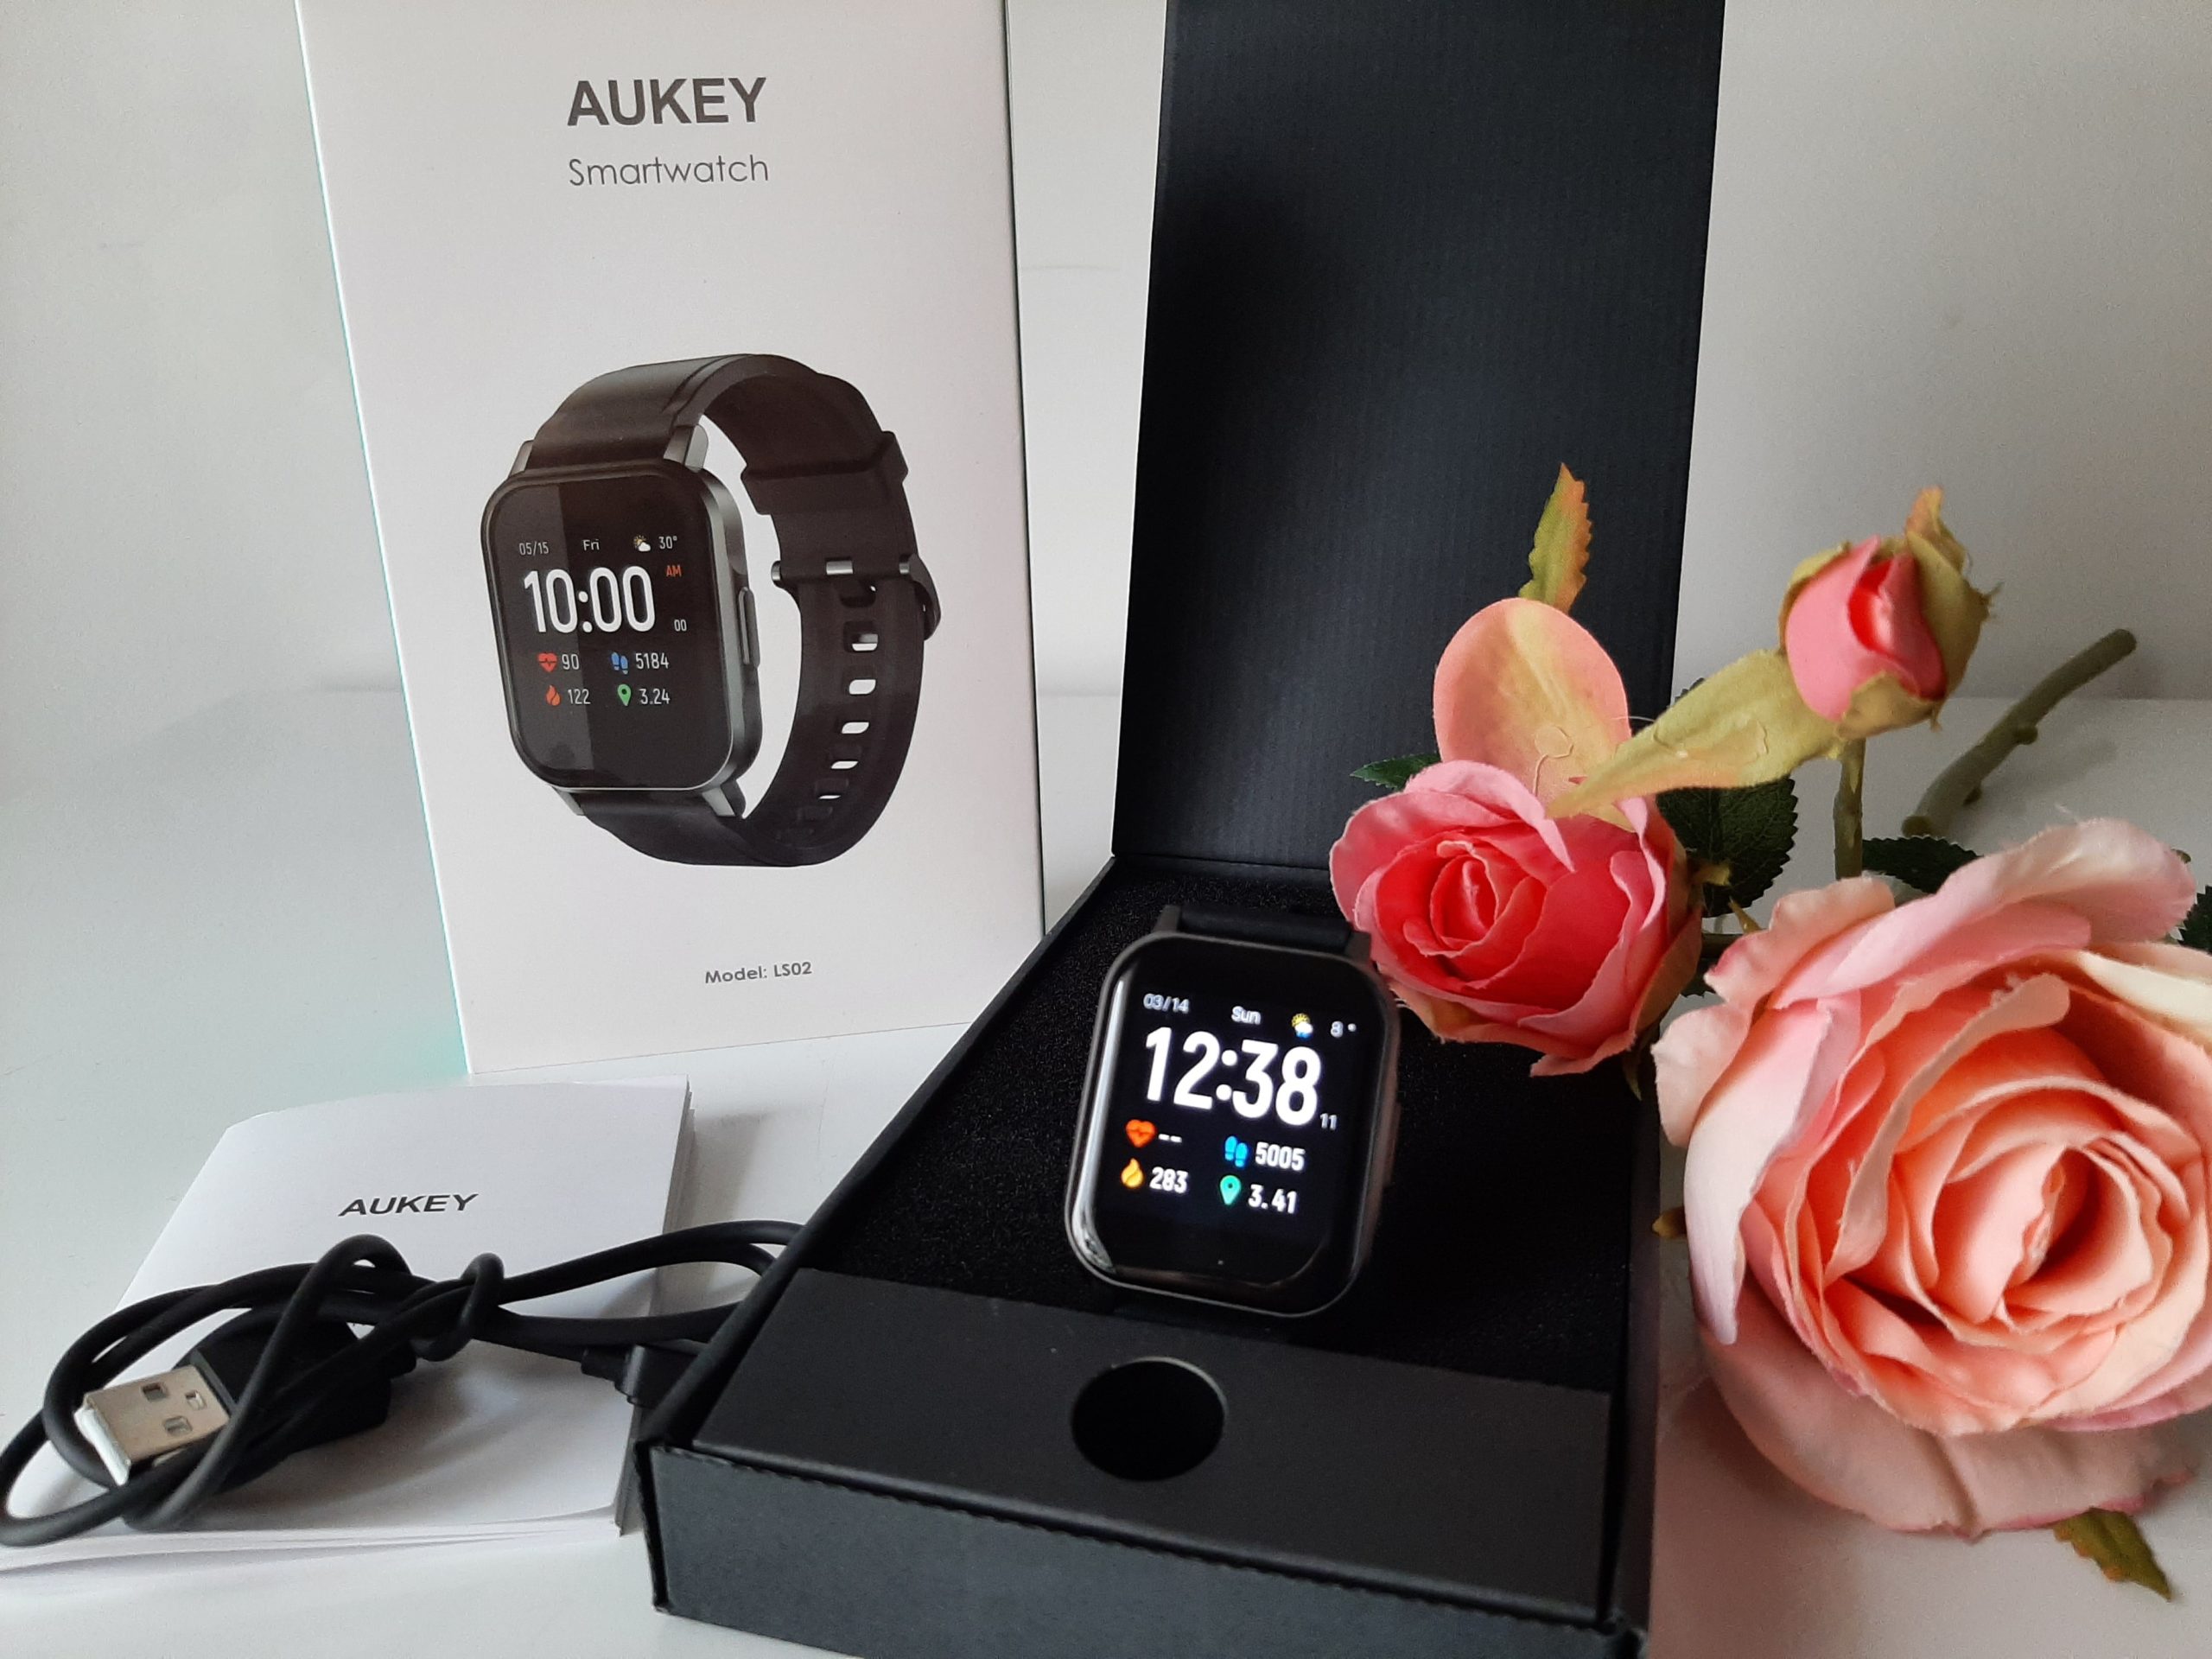 Aukey smartwatch